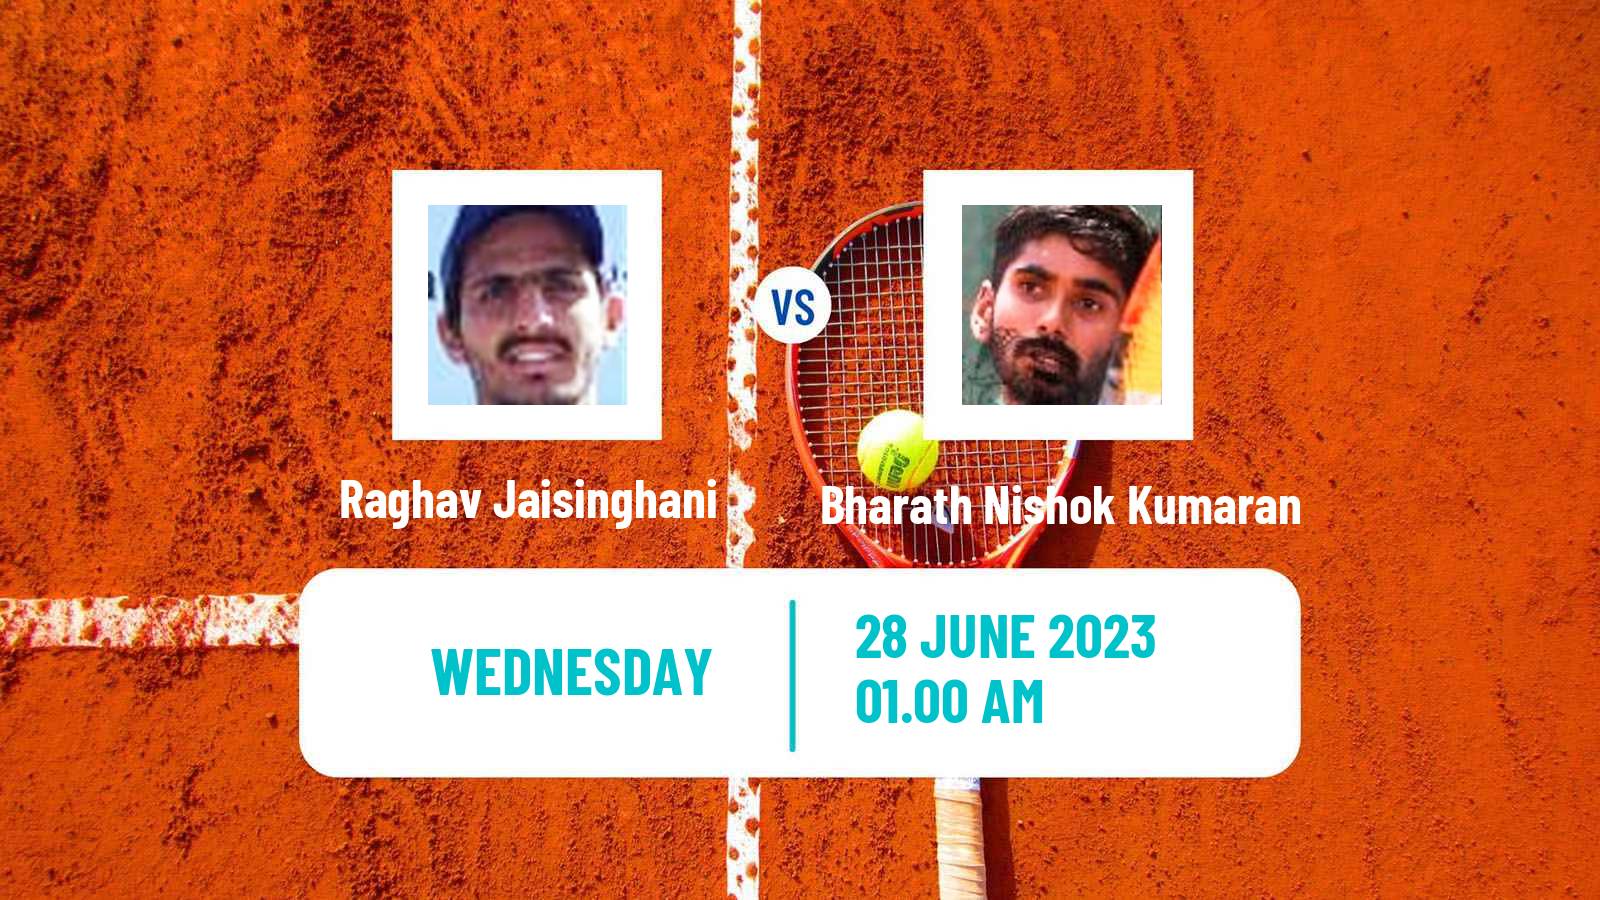 Tennis ITF M15 Jakarta 5 Men Raghav Jaisinghani - Bharath Nishok Kumaran